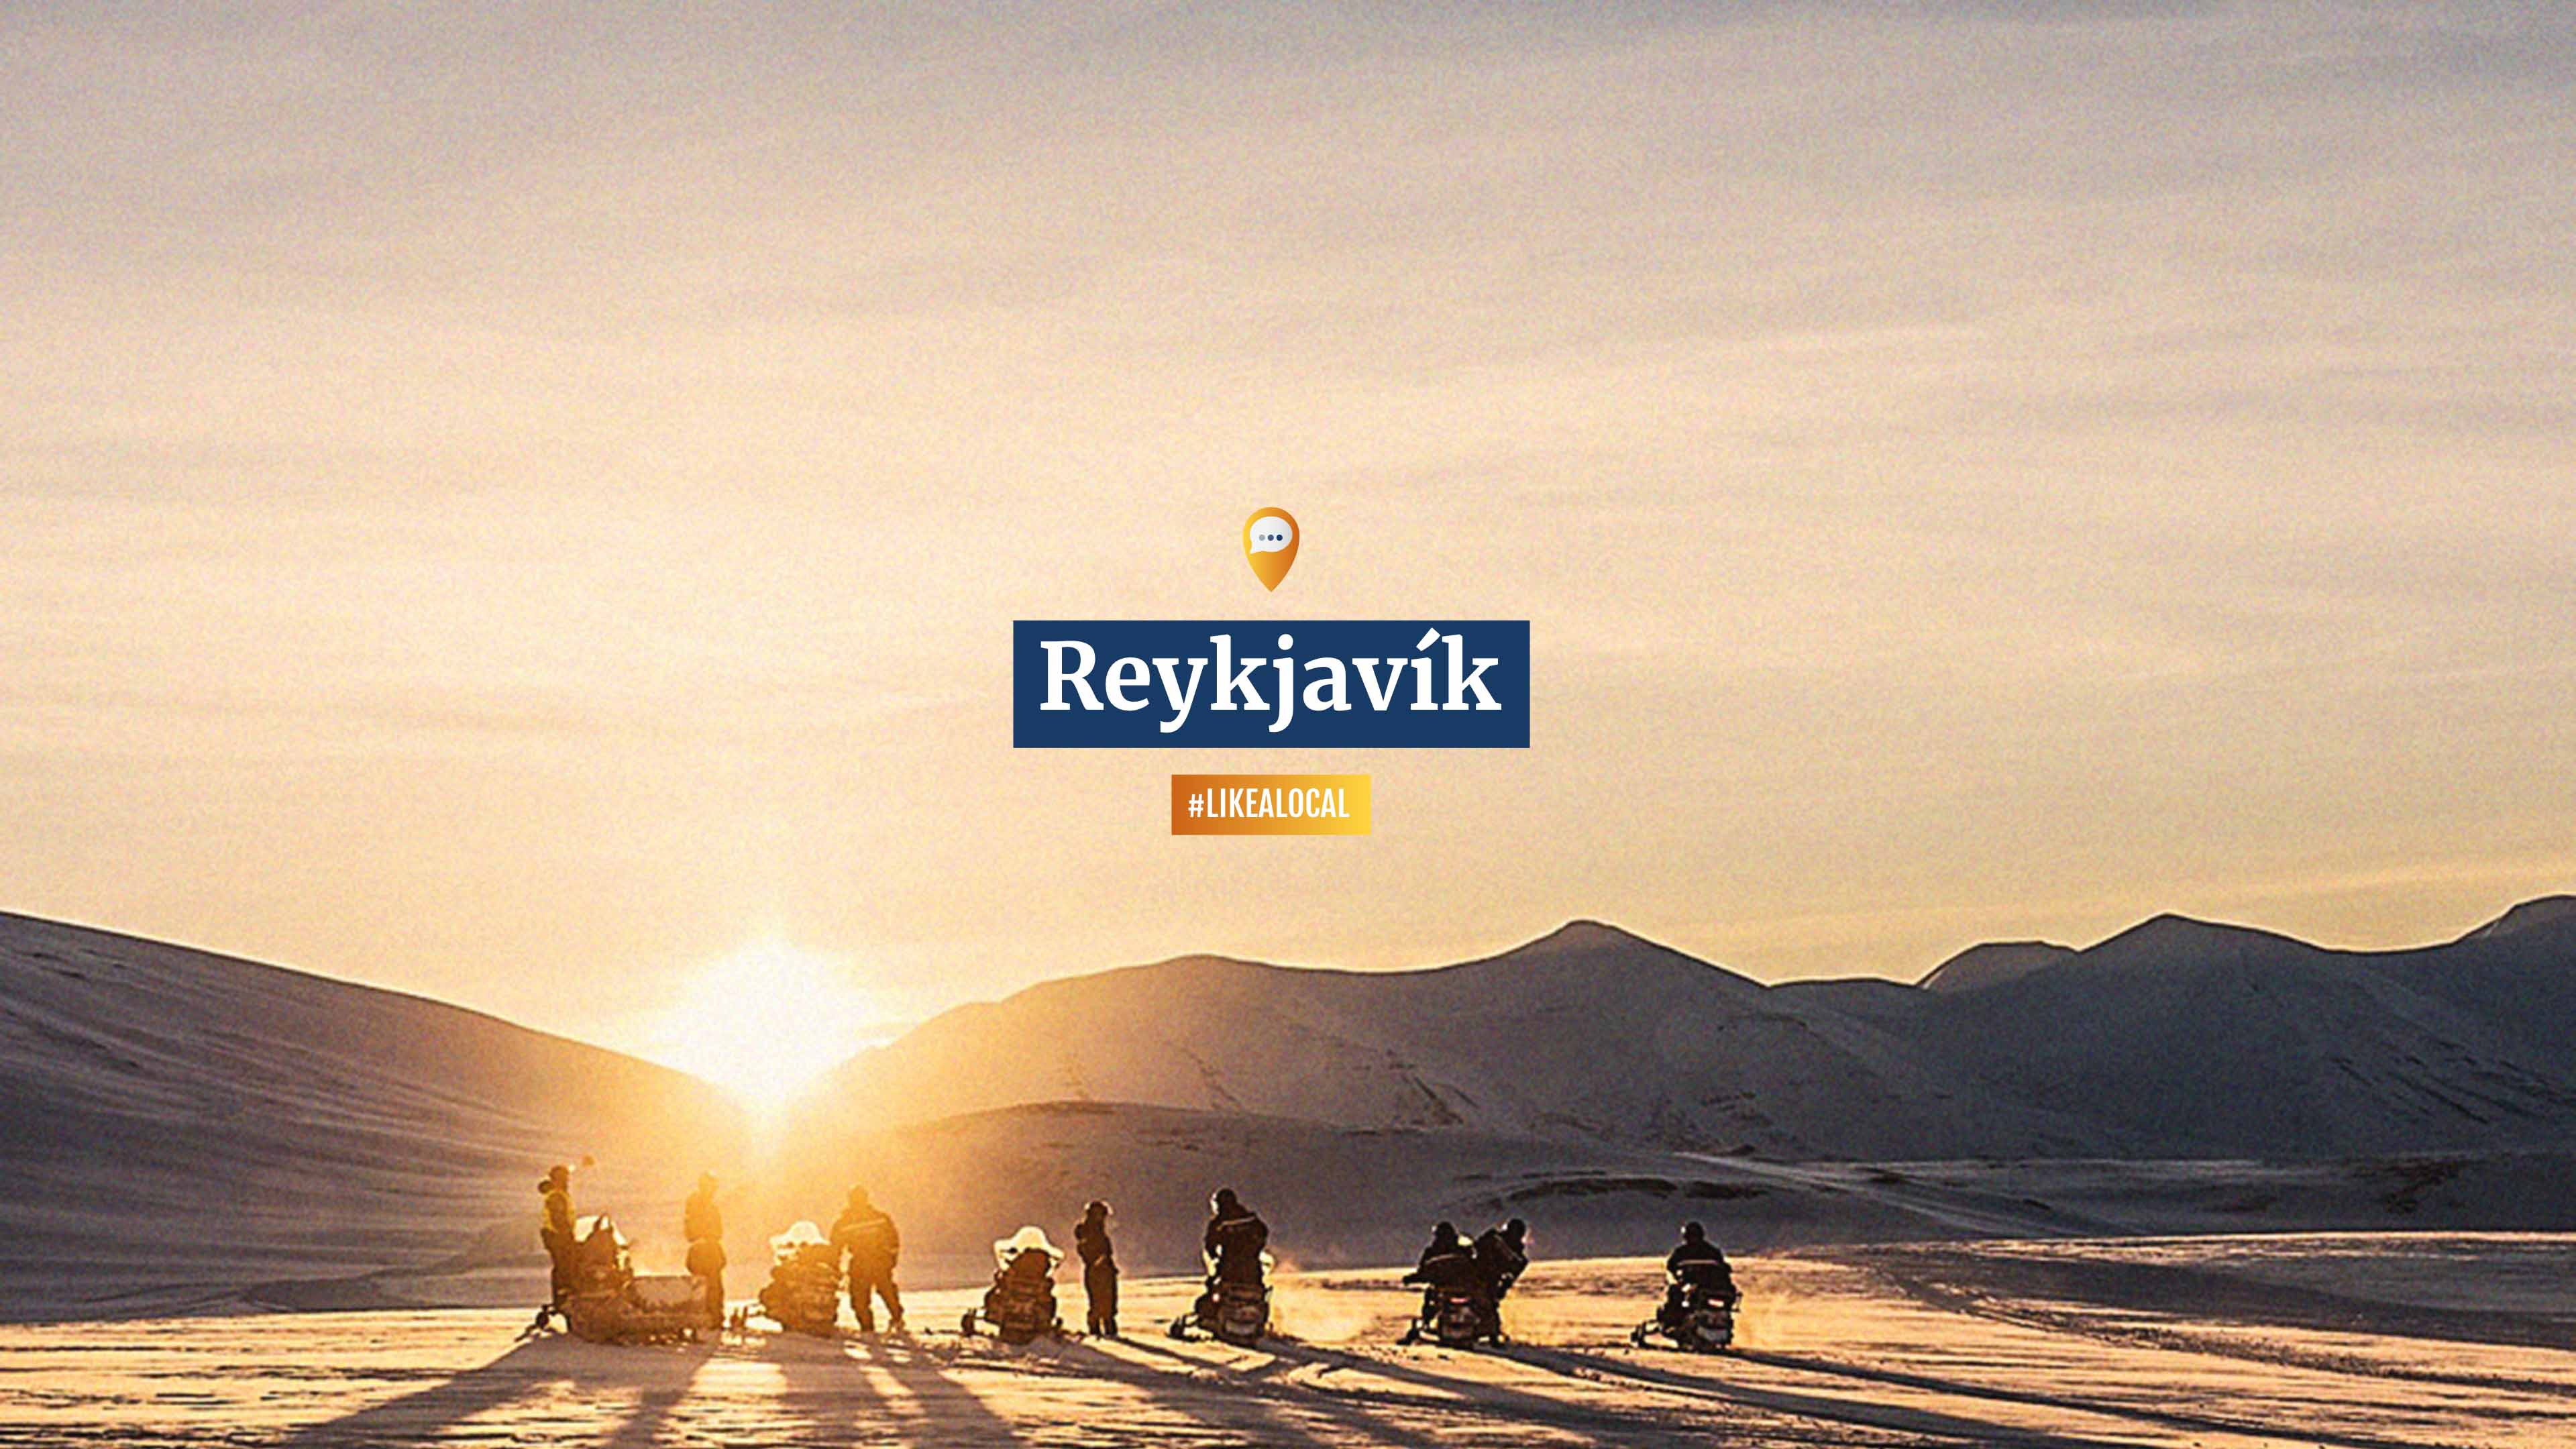 Sieben Personen auf Schneemobilen vor untergehender Sonne, Text "Reykjavik, #likealocal"